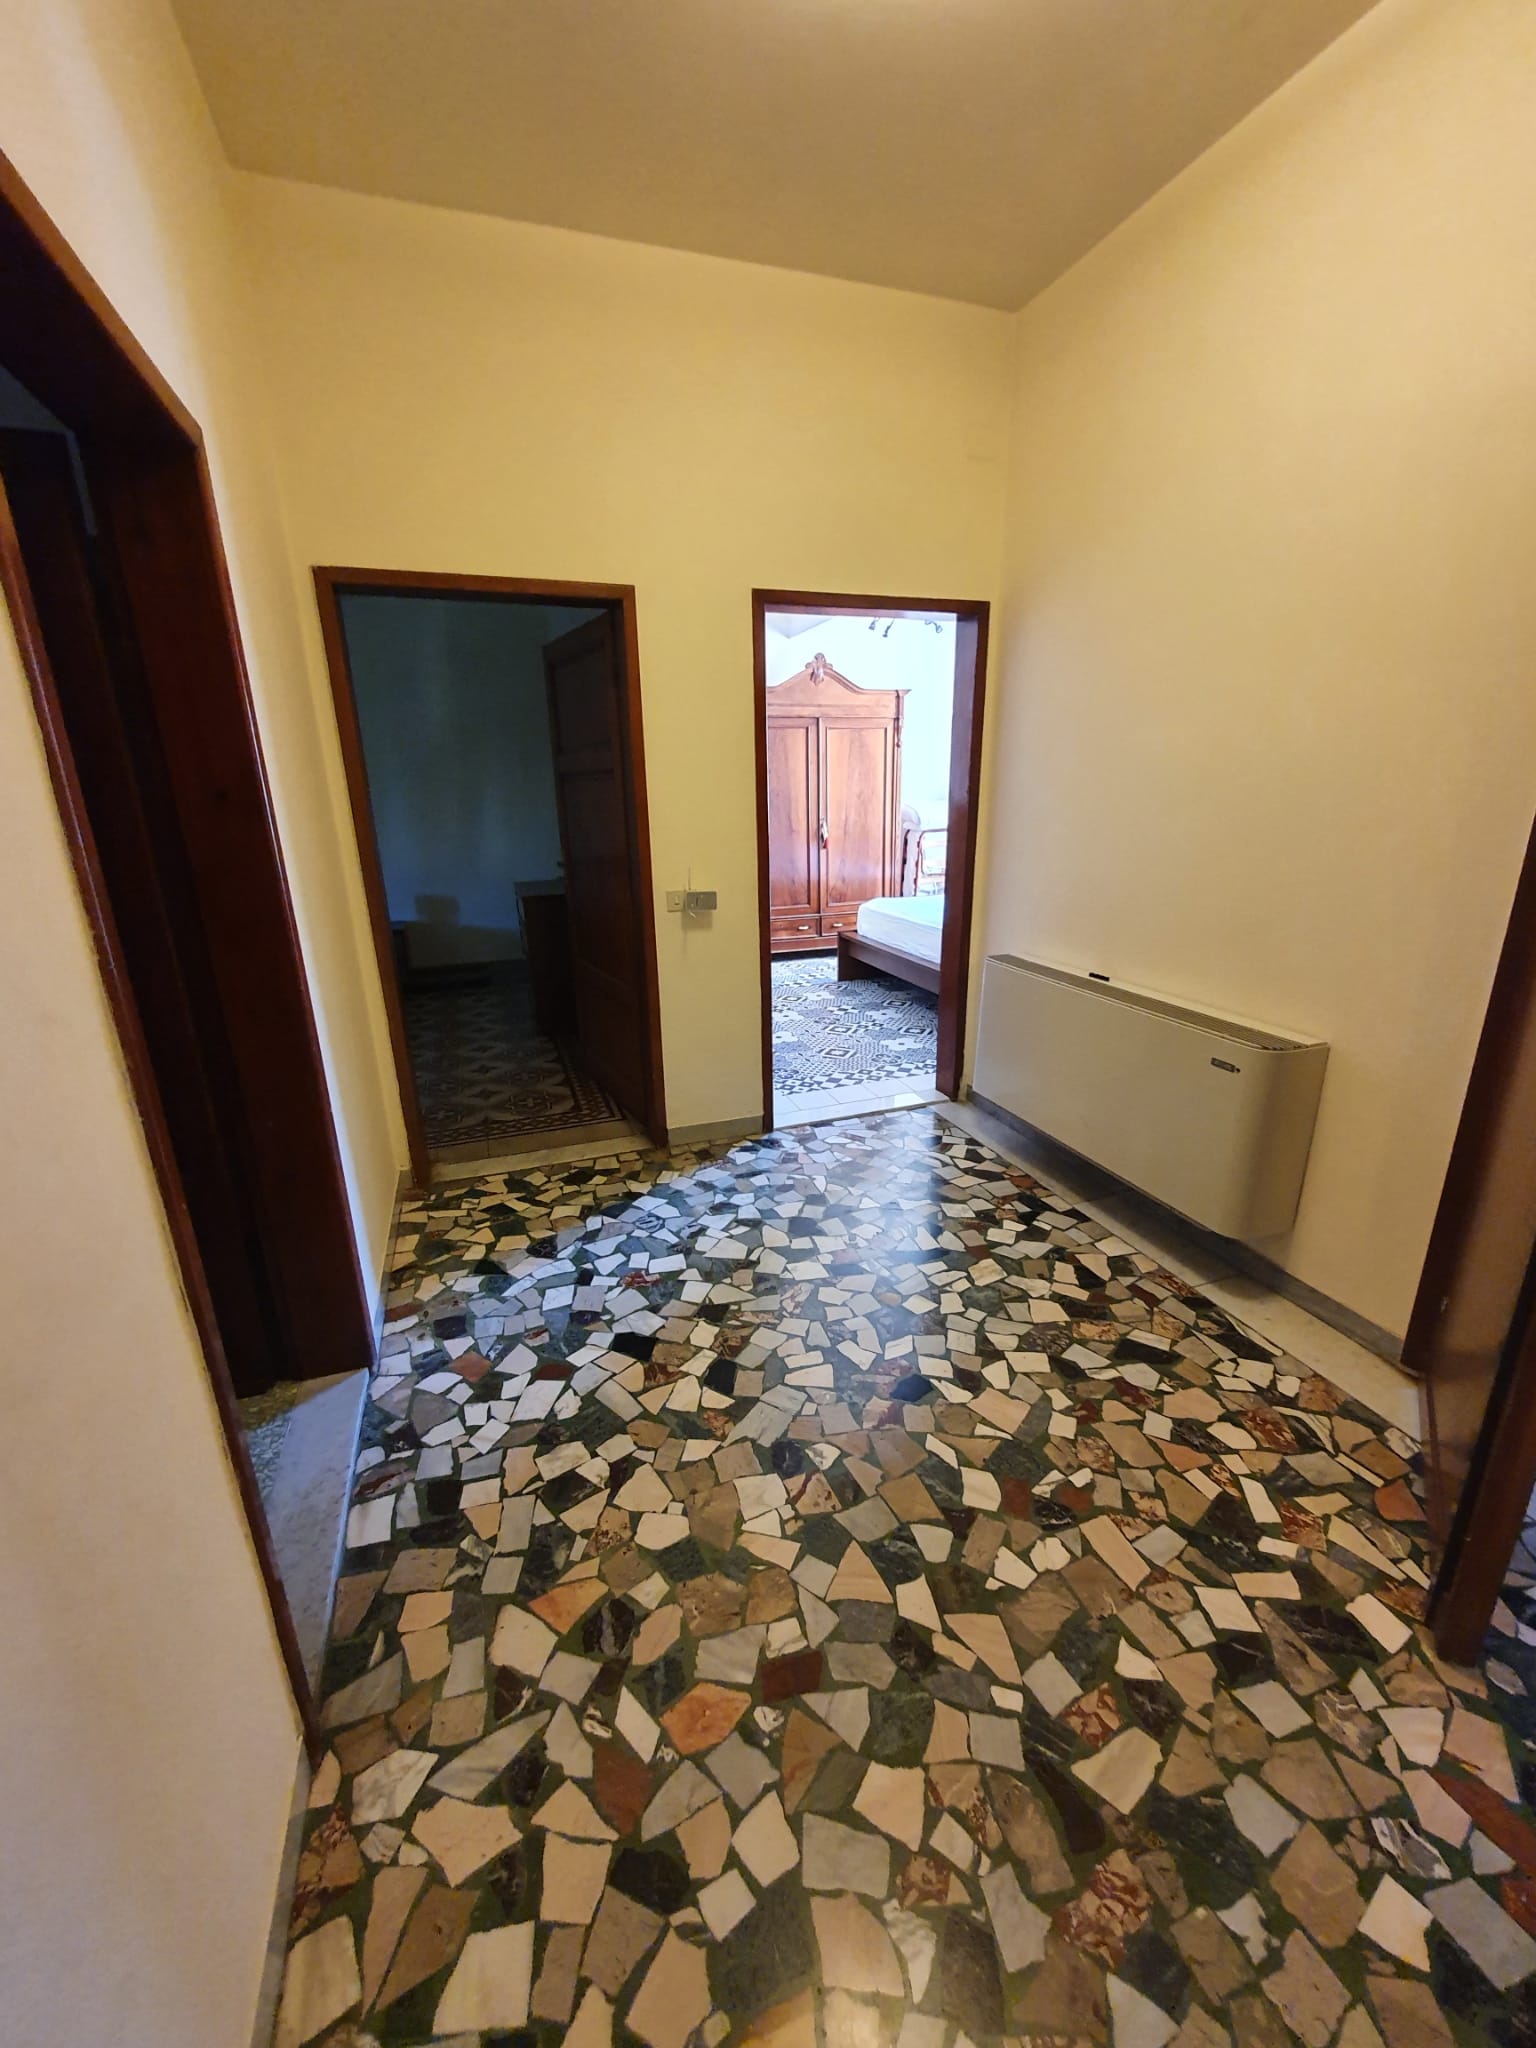 Appartamento - Pietrasanta - Citta' Giardino pietrasanta